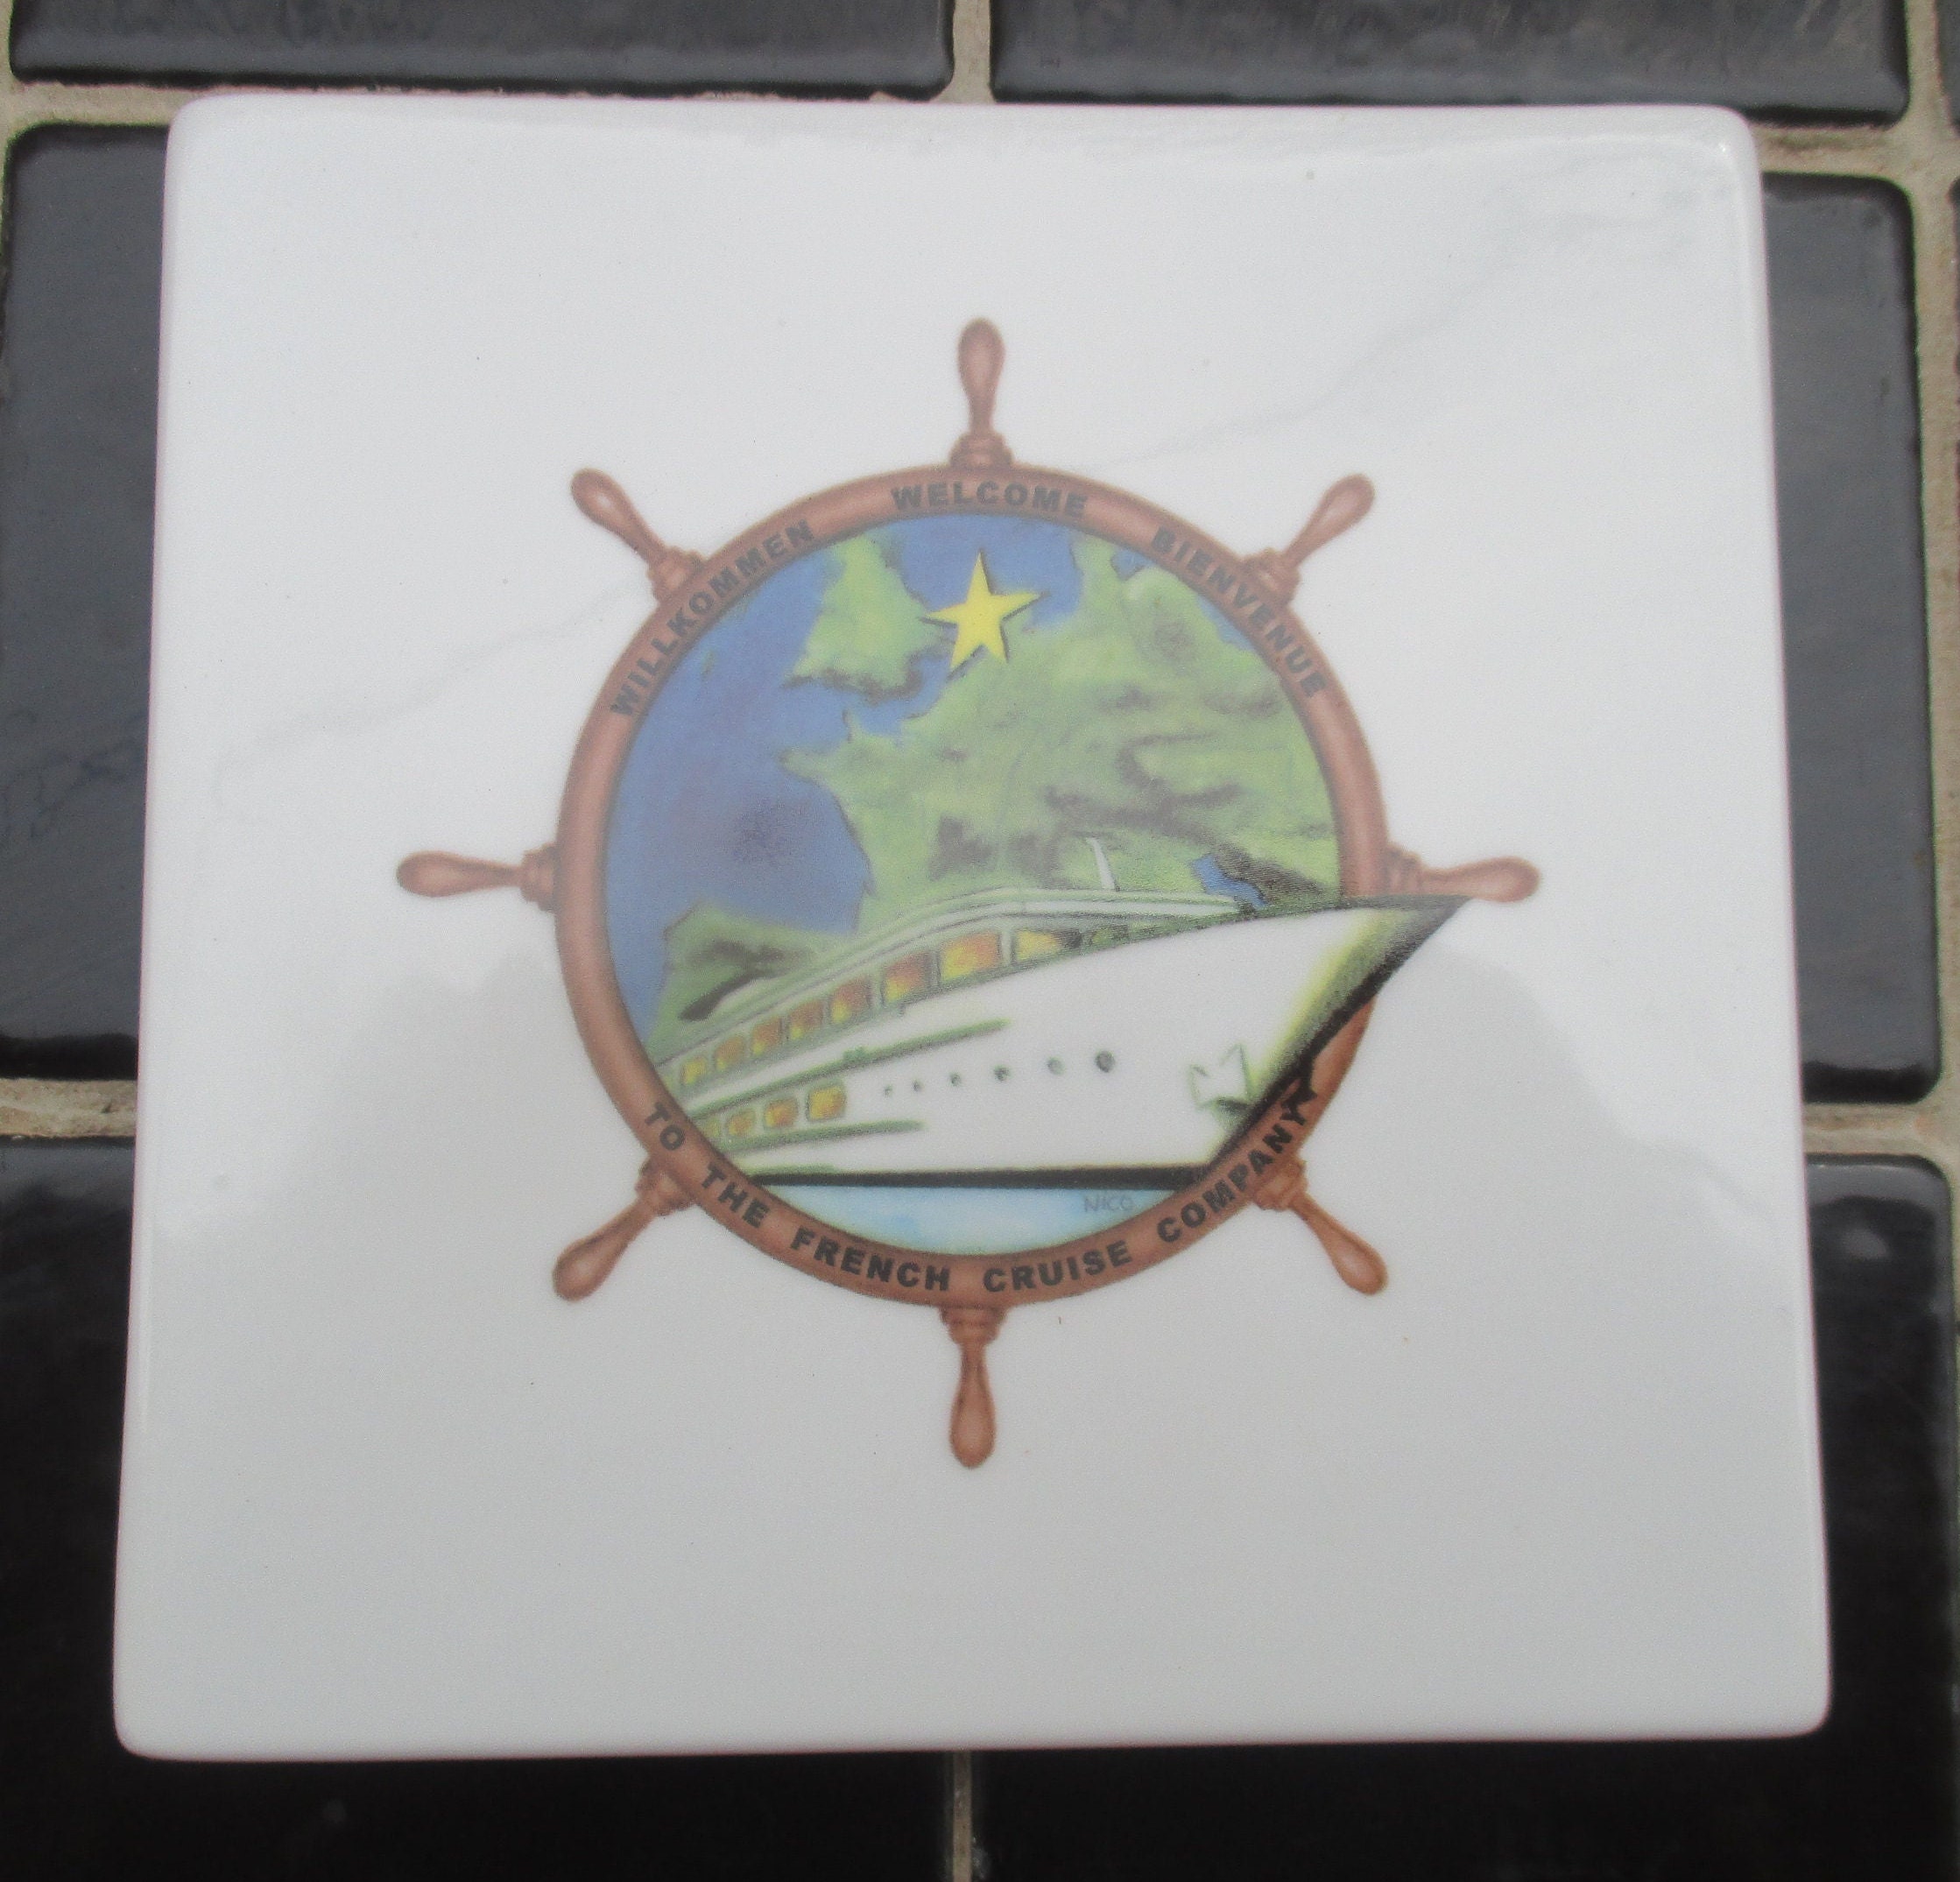 dessous de plat en porcelaine vintage sur le thème la marine, bateau aérodynamique, gouvernail, étoile et verdure signé anne ehret pour